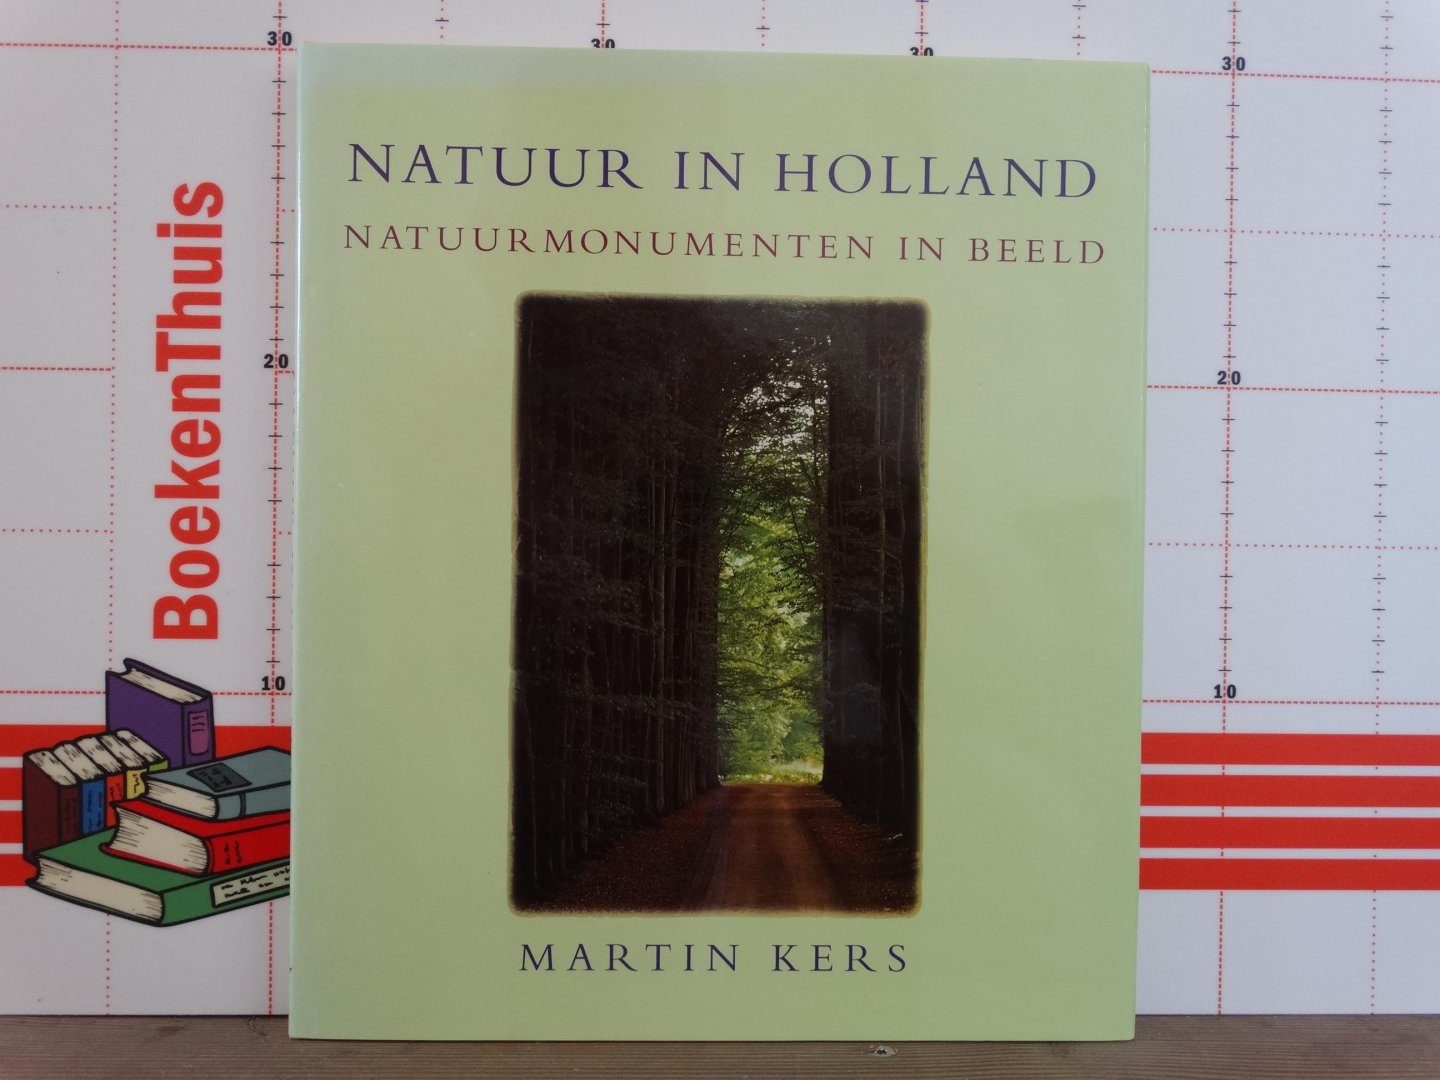 Kers, Martin - natuur in Holland, natuurmonumenten in beeld